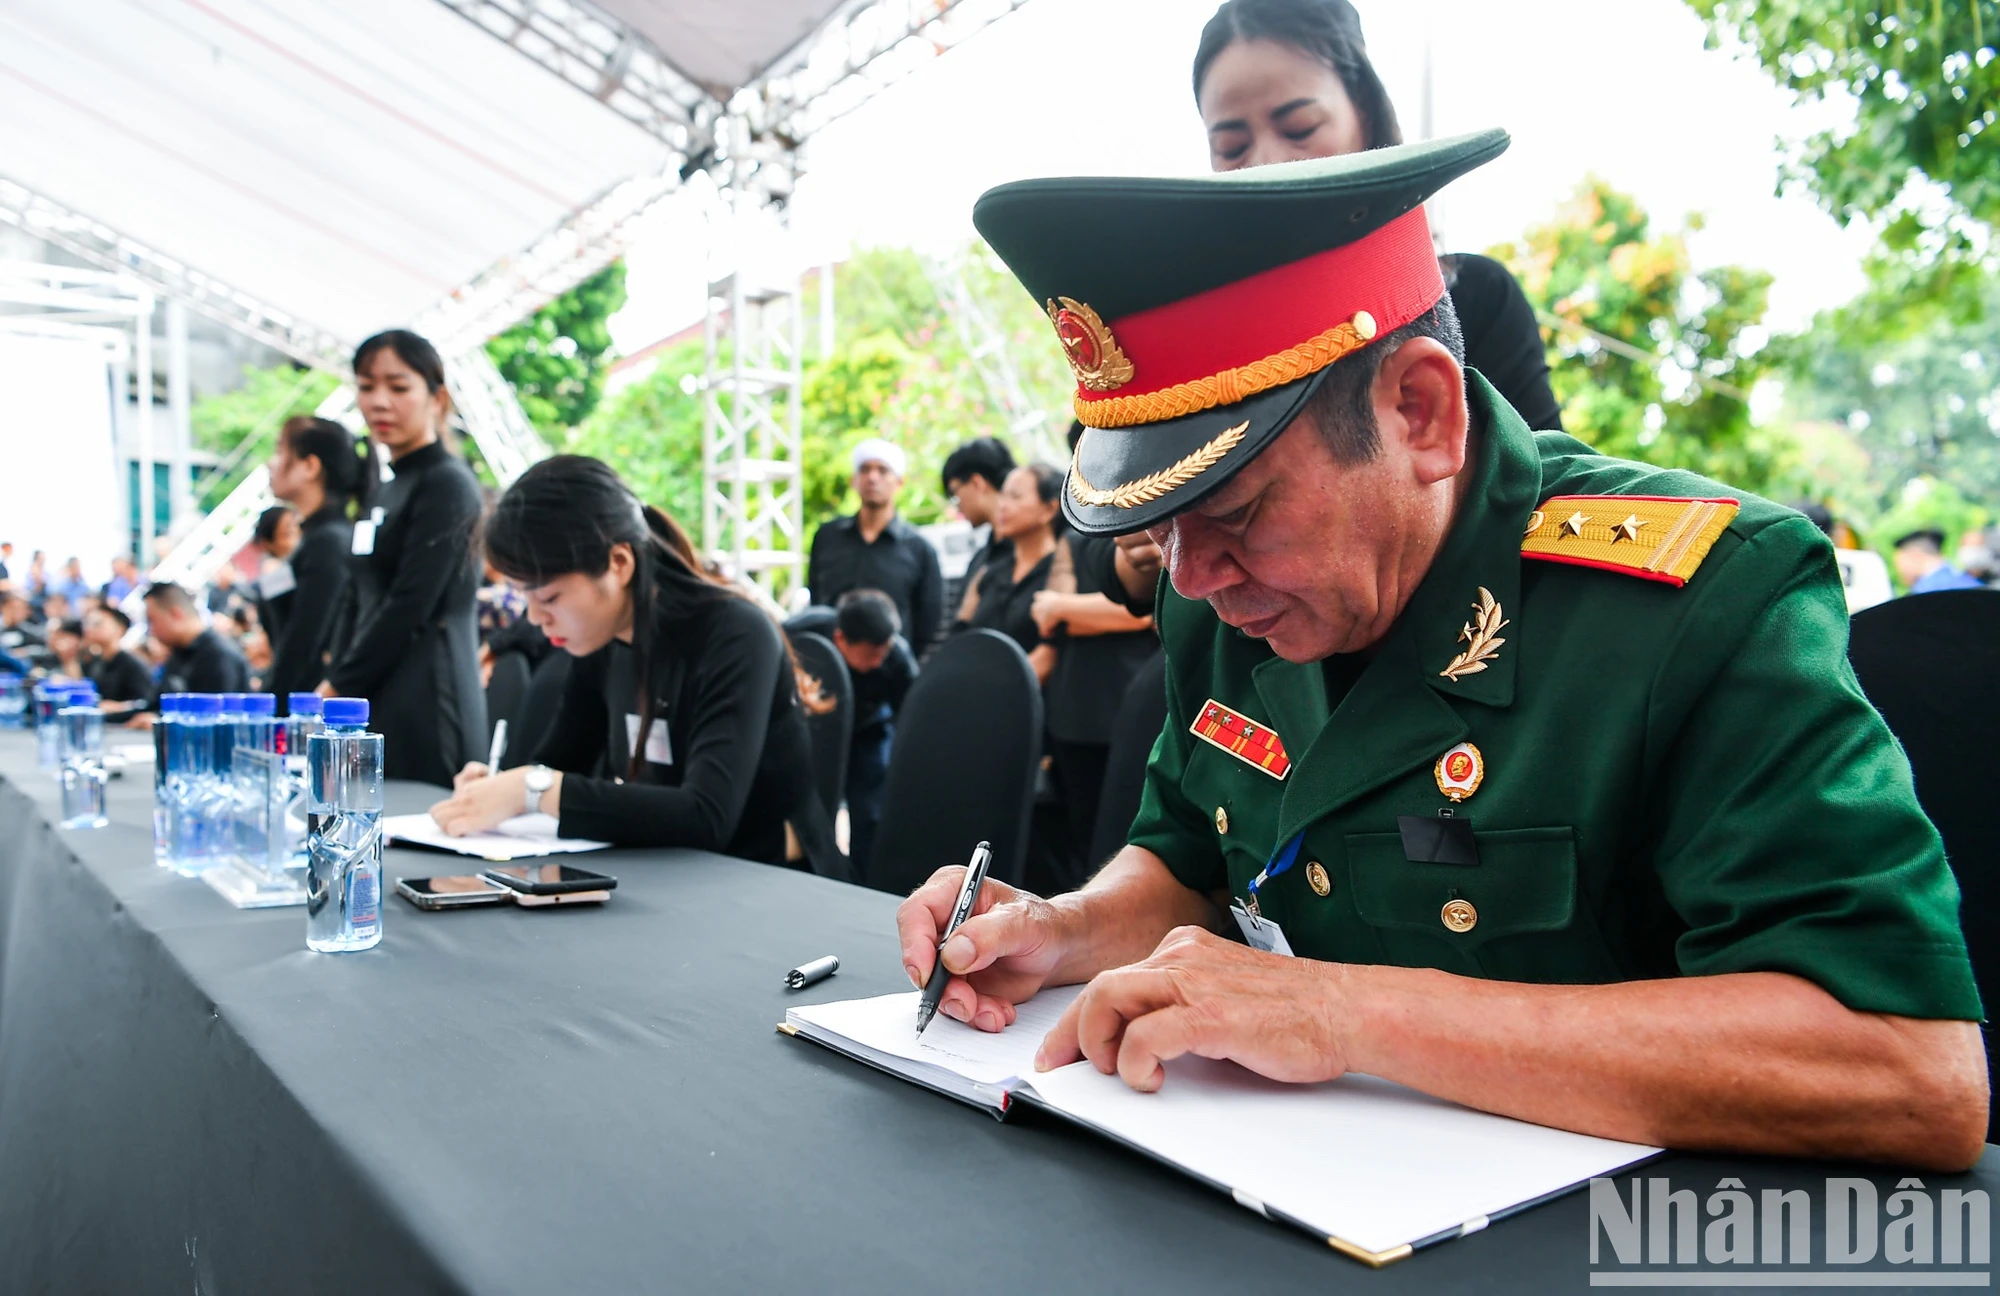 [Ảnh] Nhân dân xếp hàng dài viếng Tổng Bí thư Nguyễn Phú Trọng ở quê hương Lại Đà ảnh 15